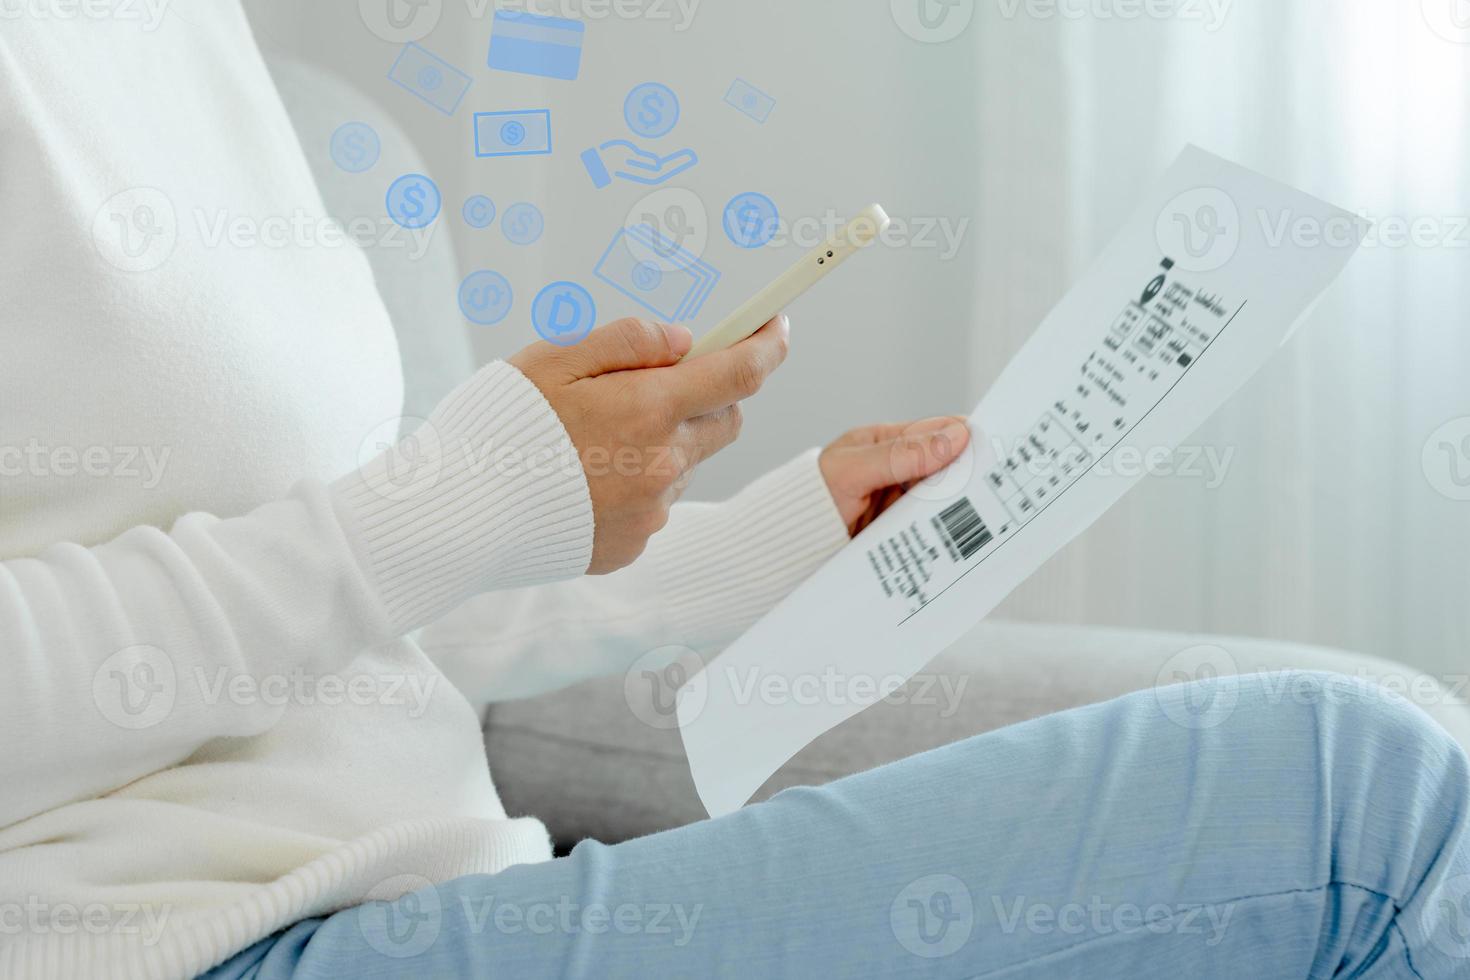 modern Frau verwenden Telefon zu Scan Barcode oder qr Codes zu Zahlen Anerkennung Karte Rechnung nach Empfang dokumentieren Rechnung online. Zahlung, erhalten, bezahlen Elektrizität, Digital Zahlungen ohne Geld, Technologie foto